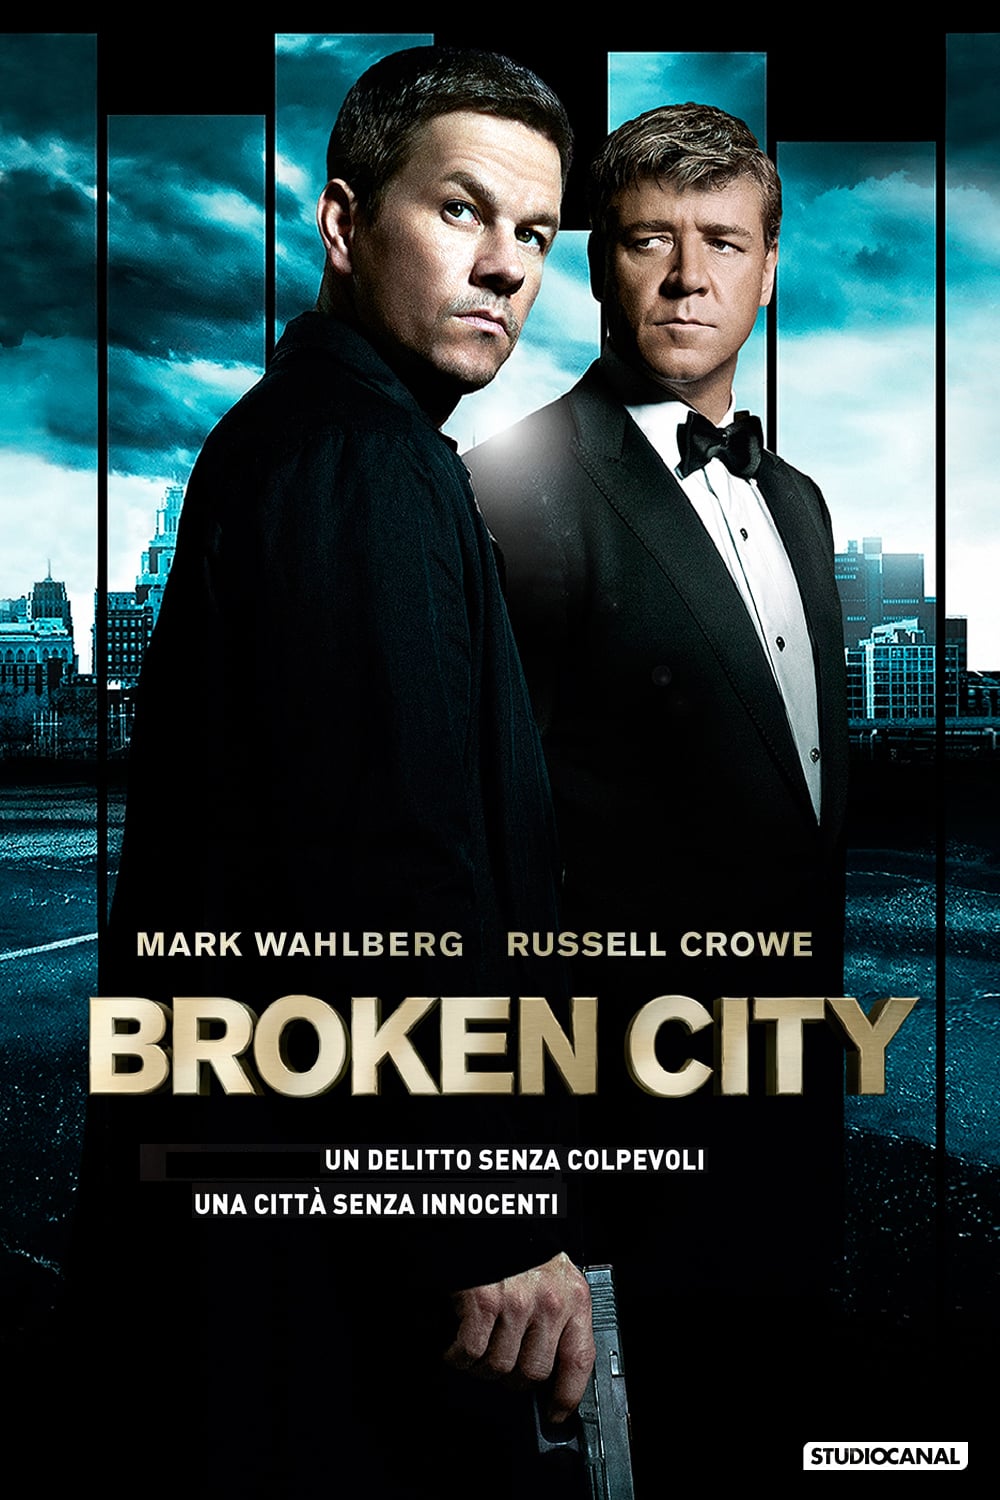 Broken City [HD] (2013)